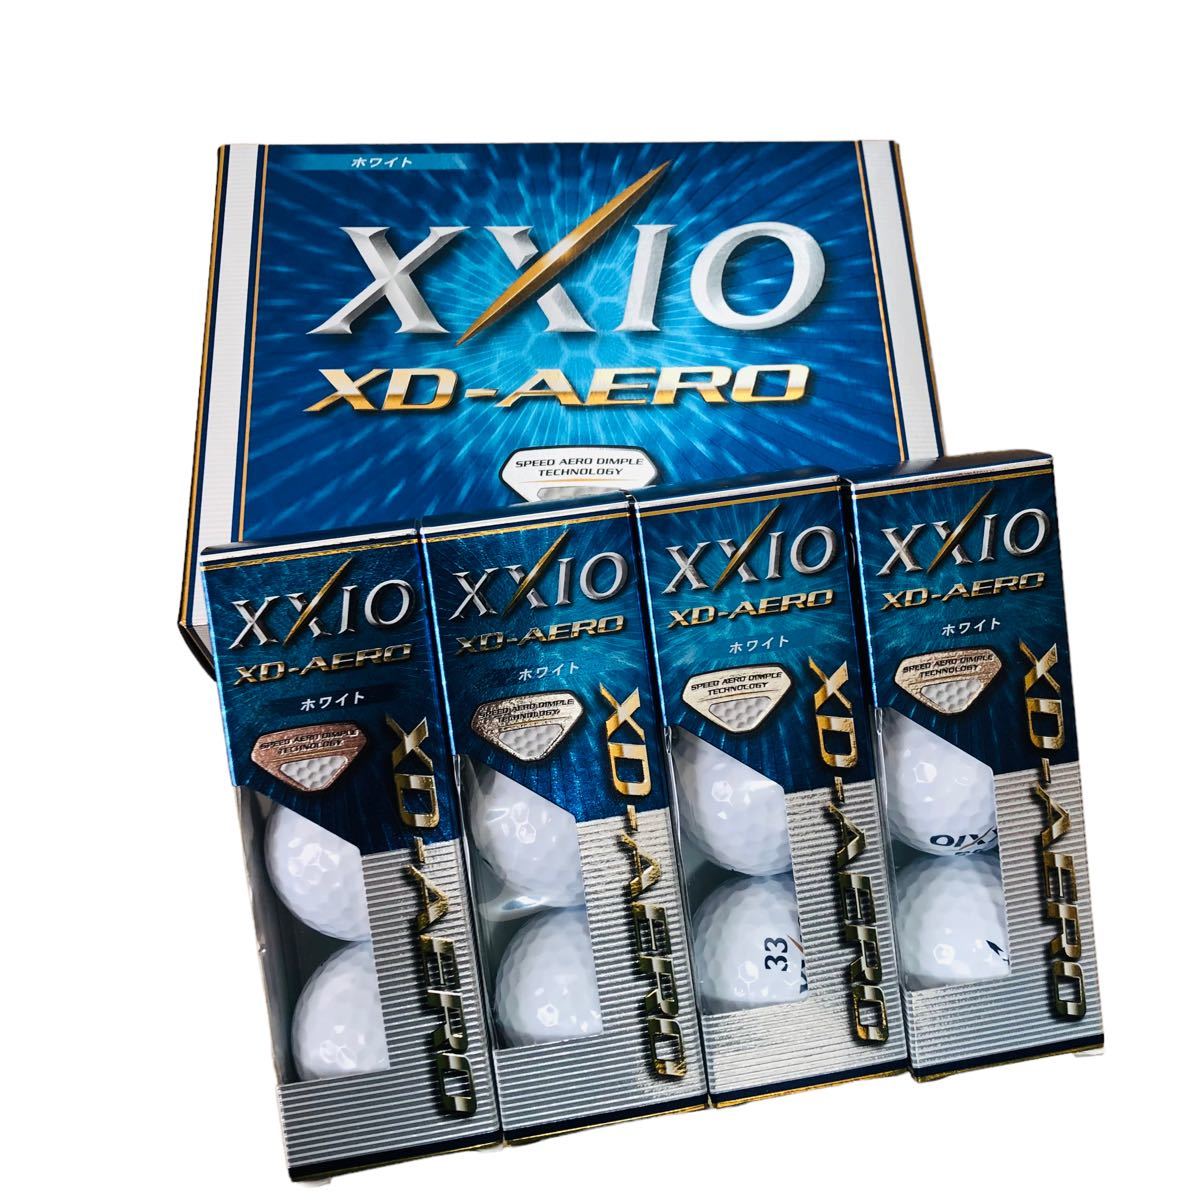 ゼクシオXXIO SUPER XD PLUS XD-AERO プレミアムホワイト